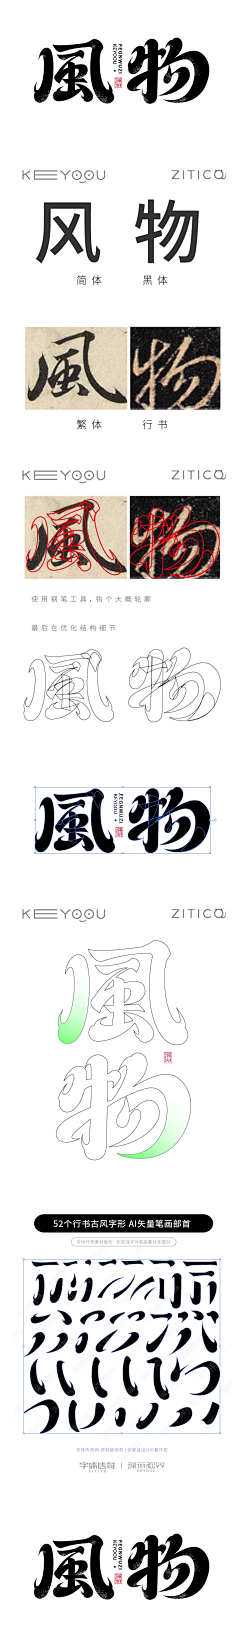 张家佳设计采集到字体传奇网素材库 ZITICQ